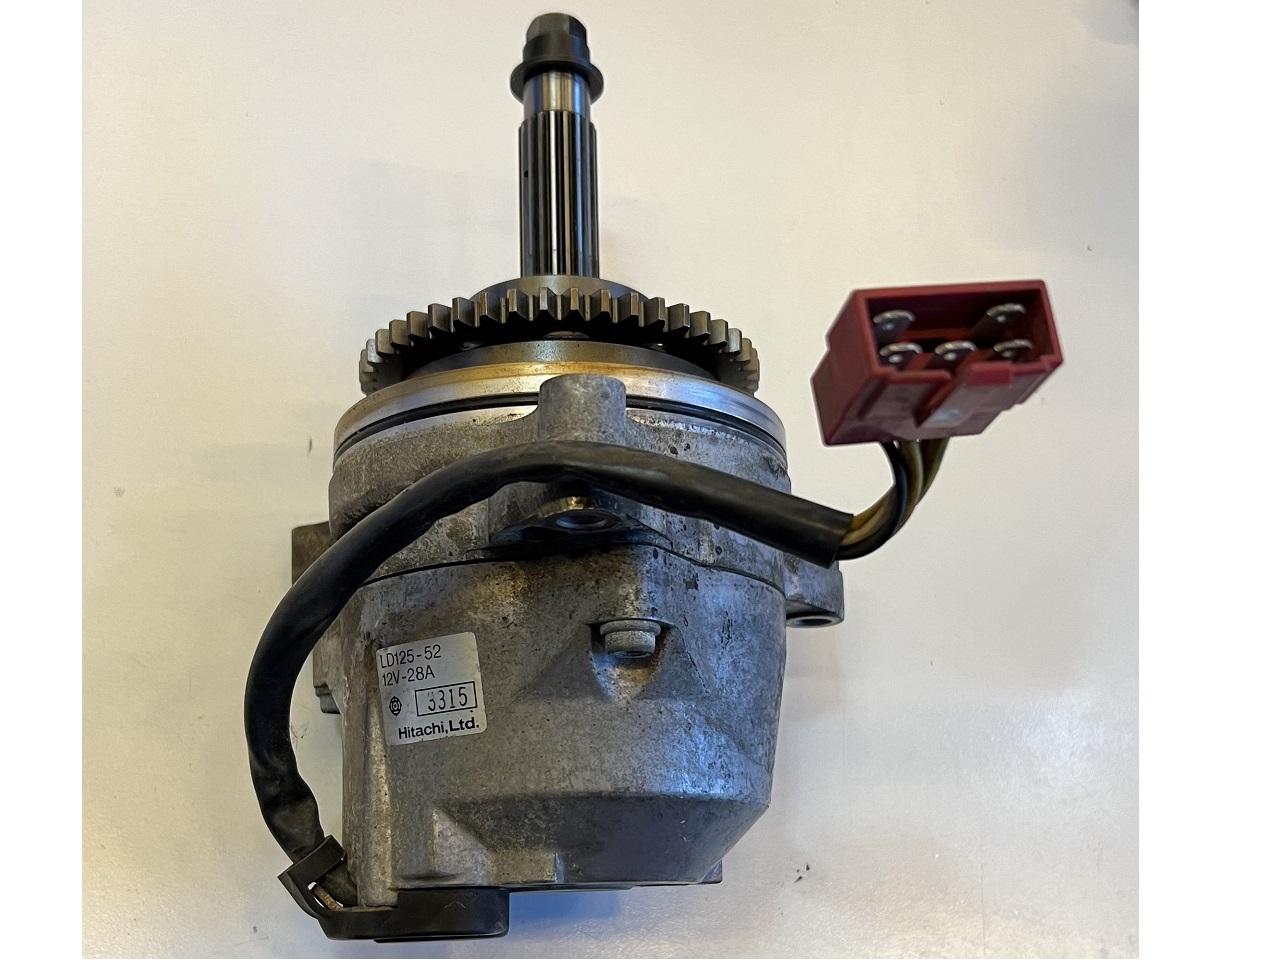 Honda CBR1000F stator generator used LD125-52 12V 28A